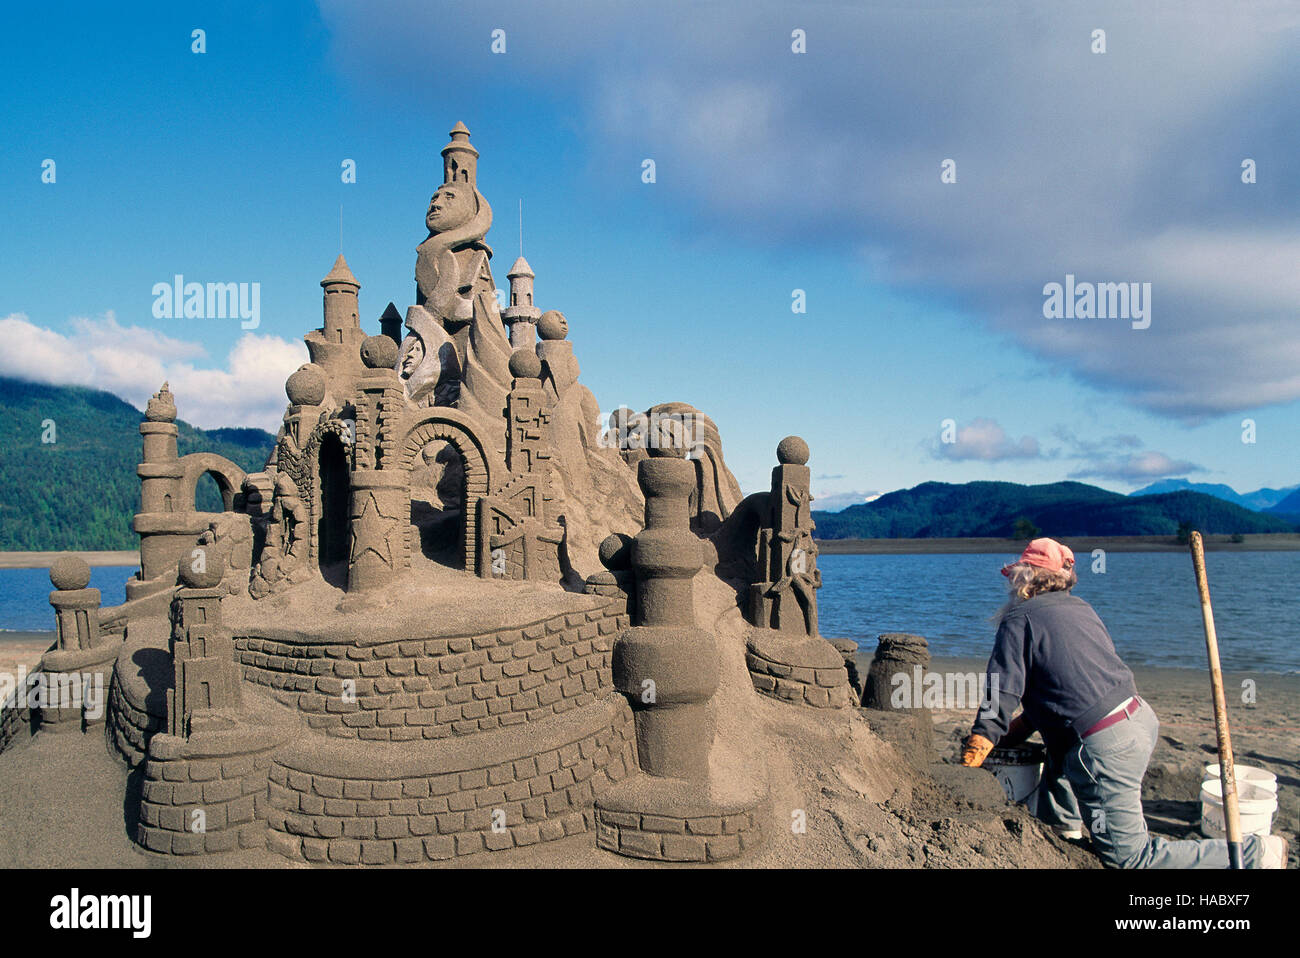 Château de sable Sculpture sur plage, Harrison Hot Springs, en Colombie-Britannique, Canada - Championnats du monde à Harrison Lake Banque D'Images